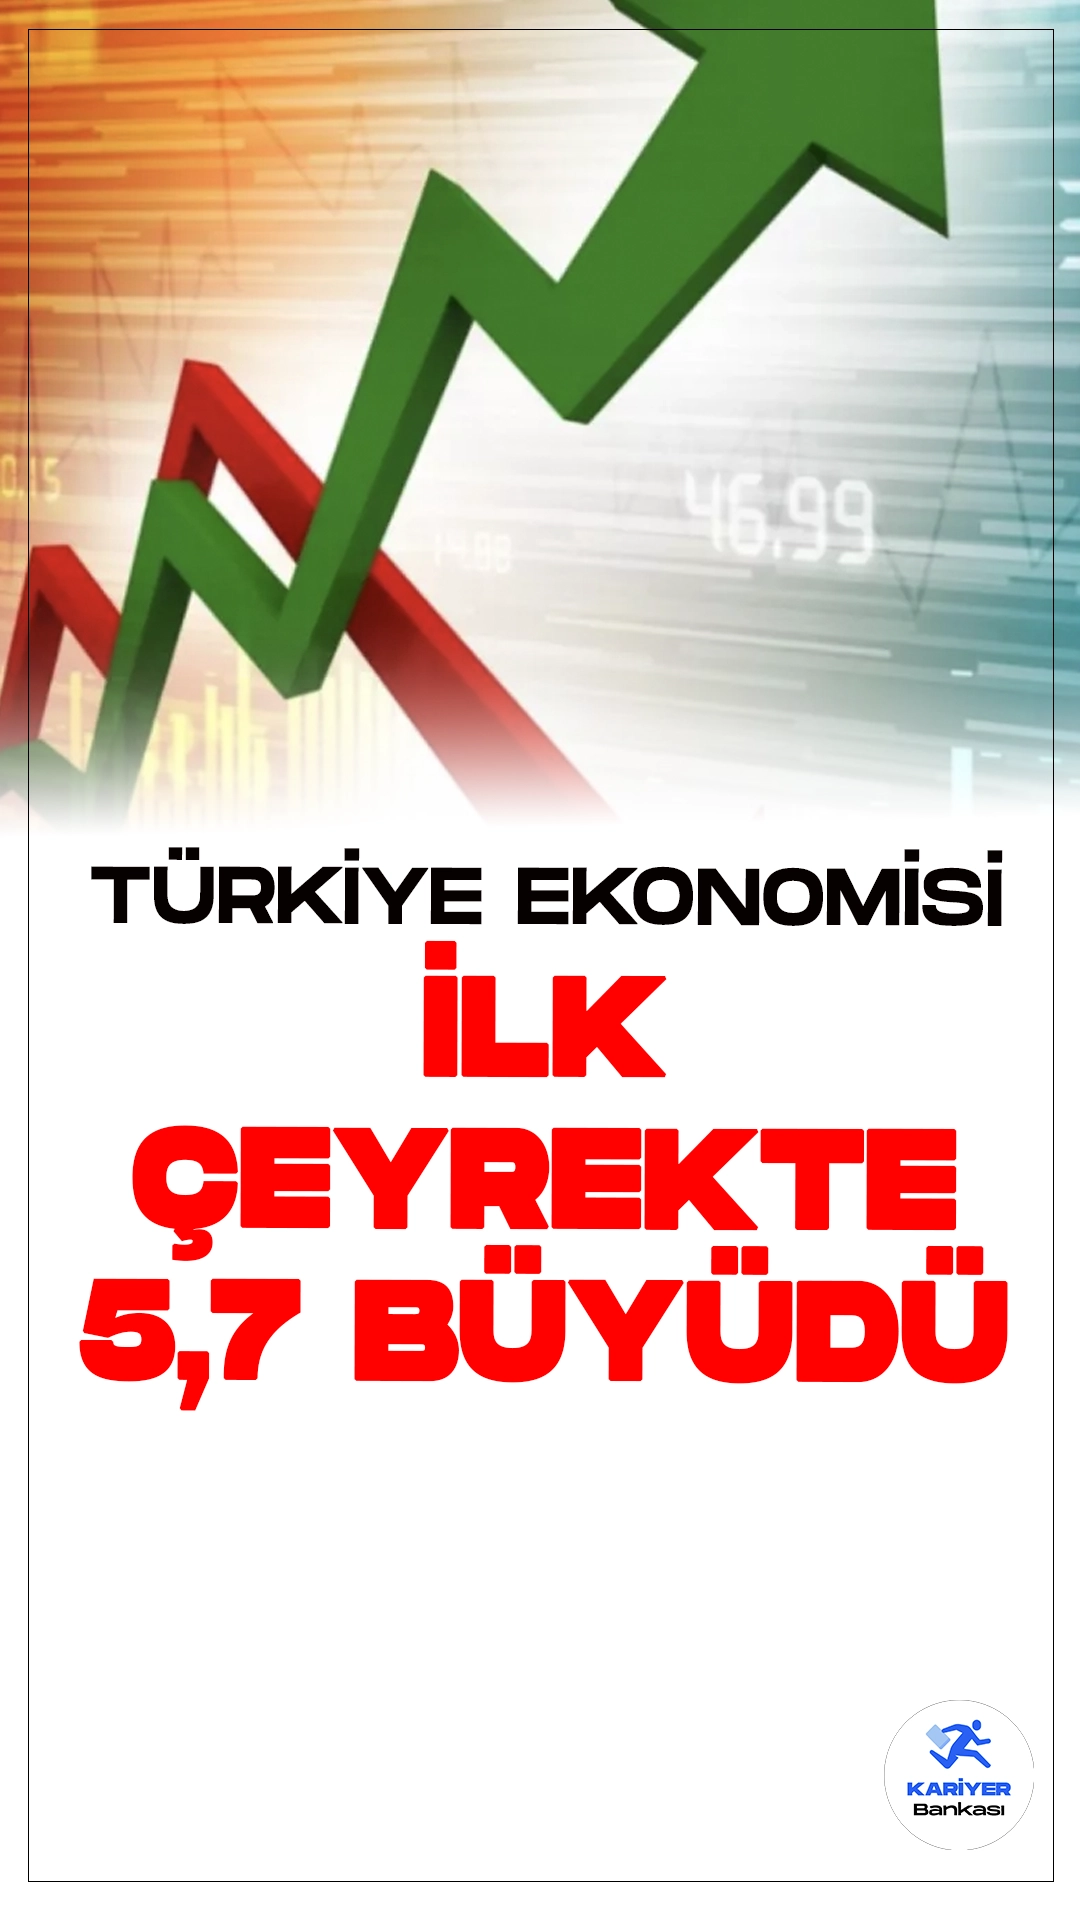 Türkiye Ekonomisi İlk Çeyrekte Güçlü Büyüme Kaydetti.Türkiye ekonomisi, 2024 yılının ilk çeyreğinde yüzde 5,7 büyüme kaydederek önemli bir başarıya imza attı. Türkiye İstatistik Kurumu (TÜİK) tarafından açıklanan verilere göre, bu büyüme zincirlenmiş hacim endeksi olarak hesaplandı.